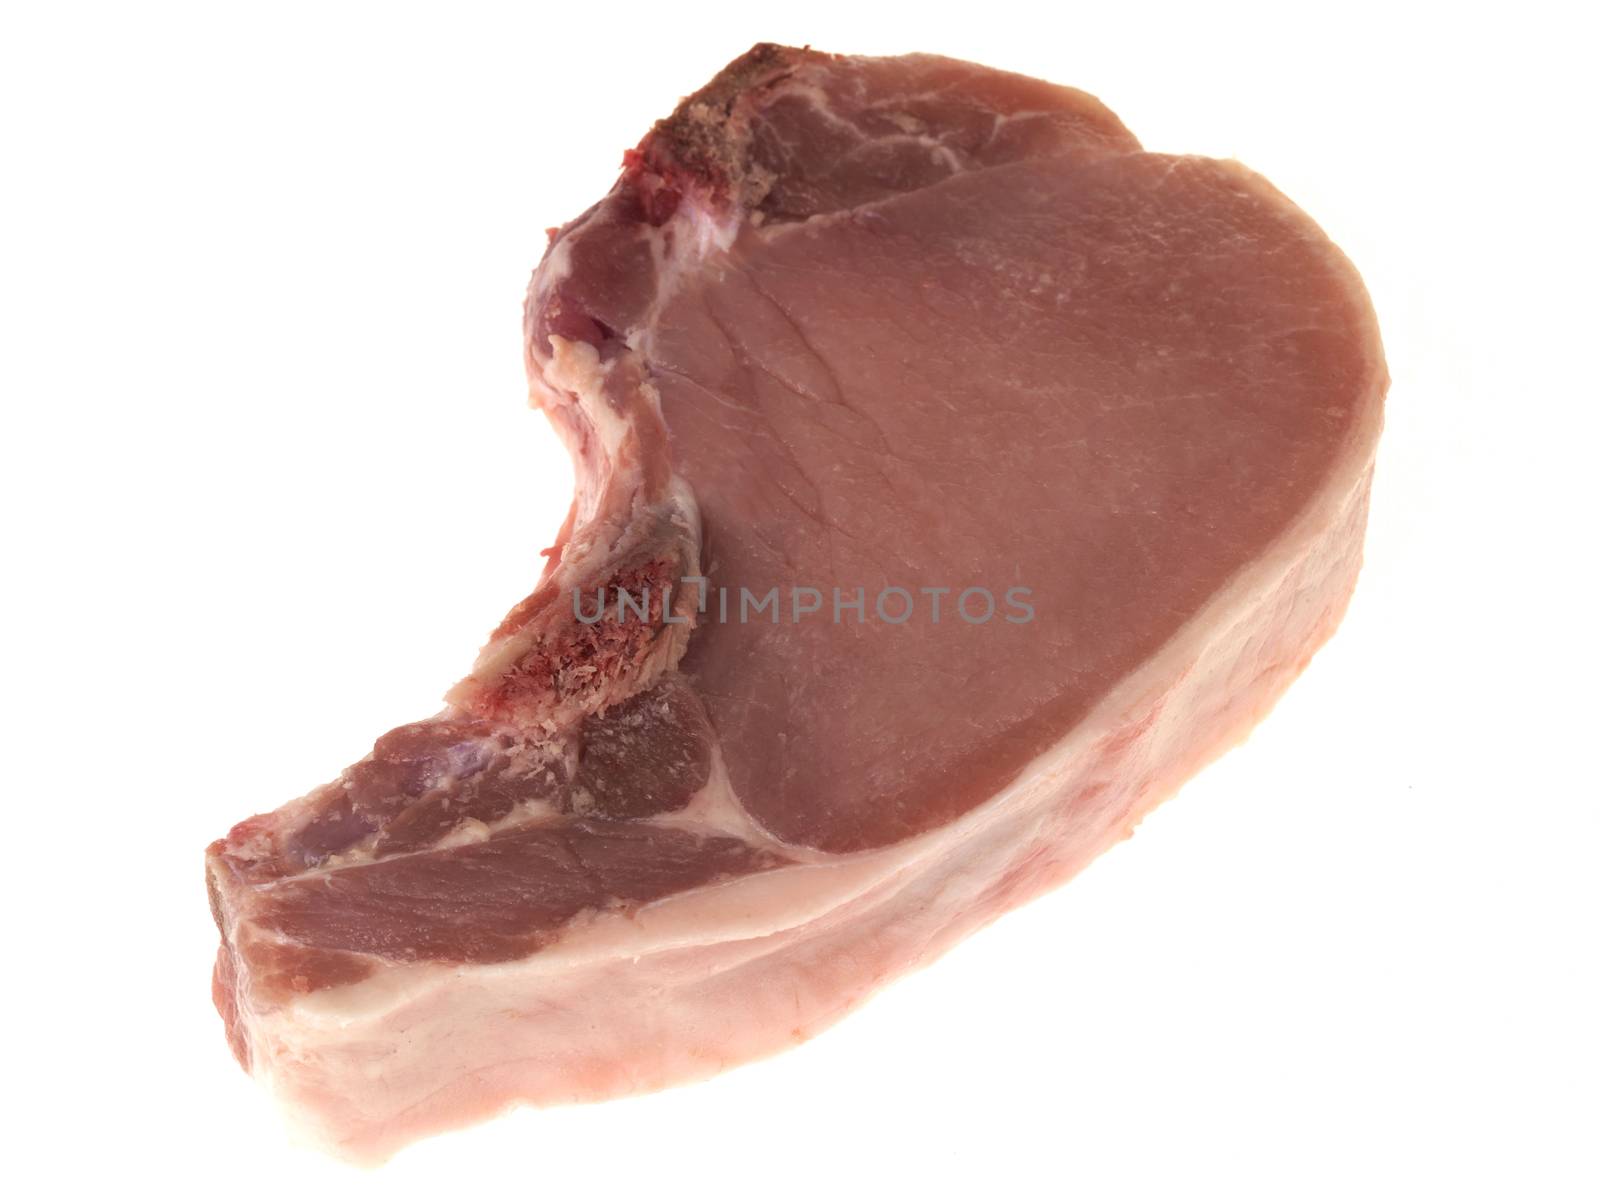 Pork Chop by Whiteboxmedia